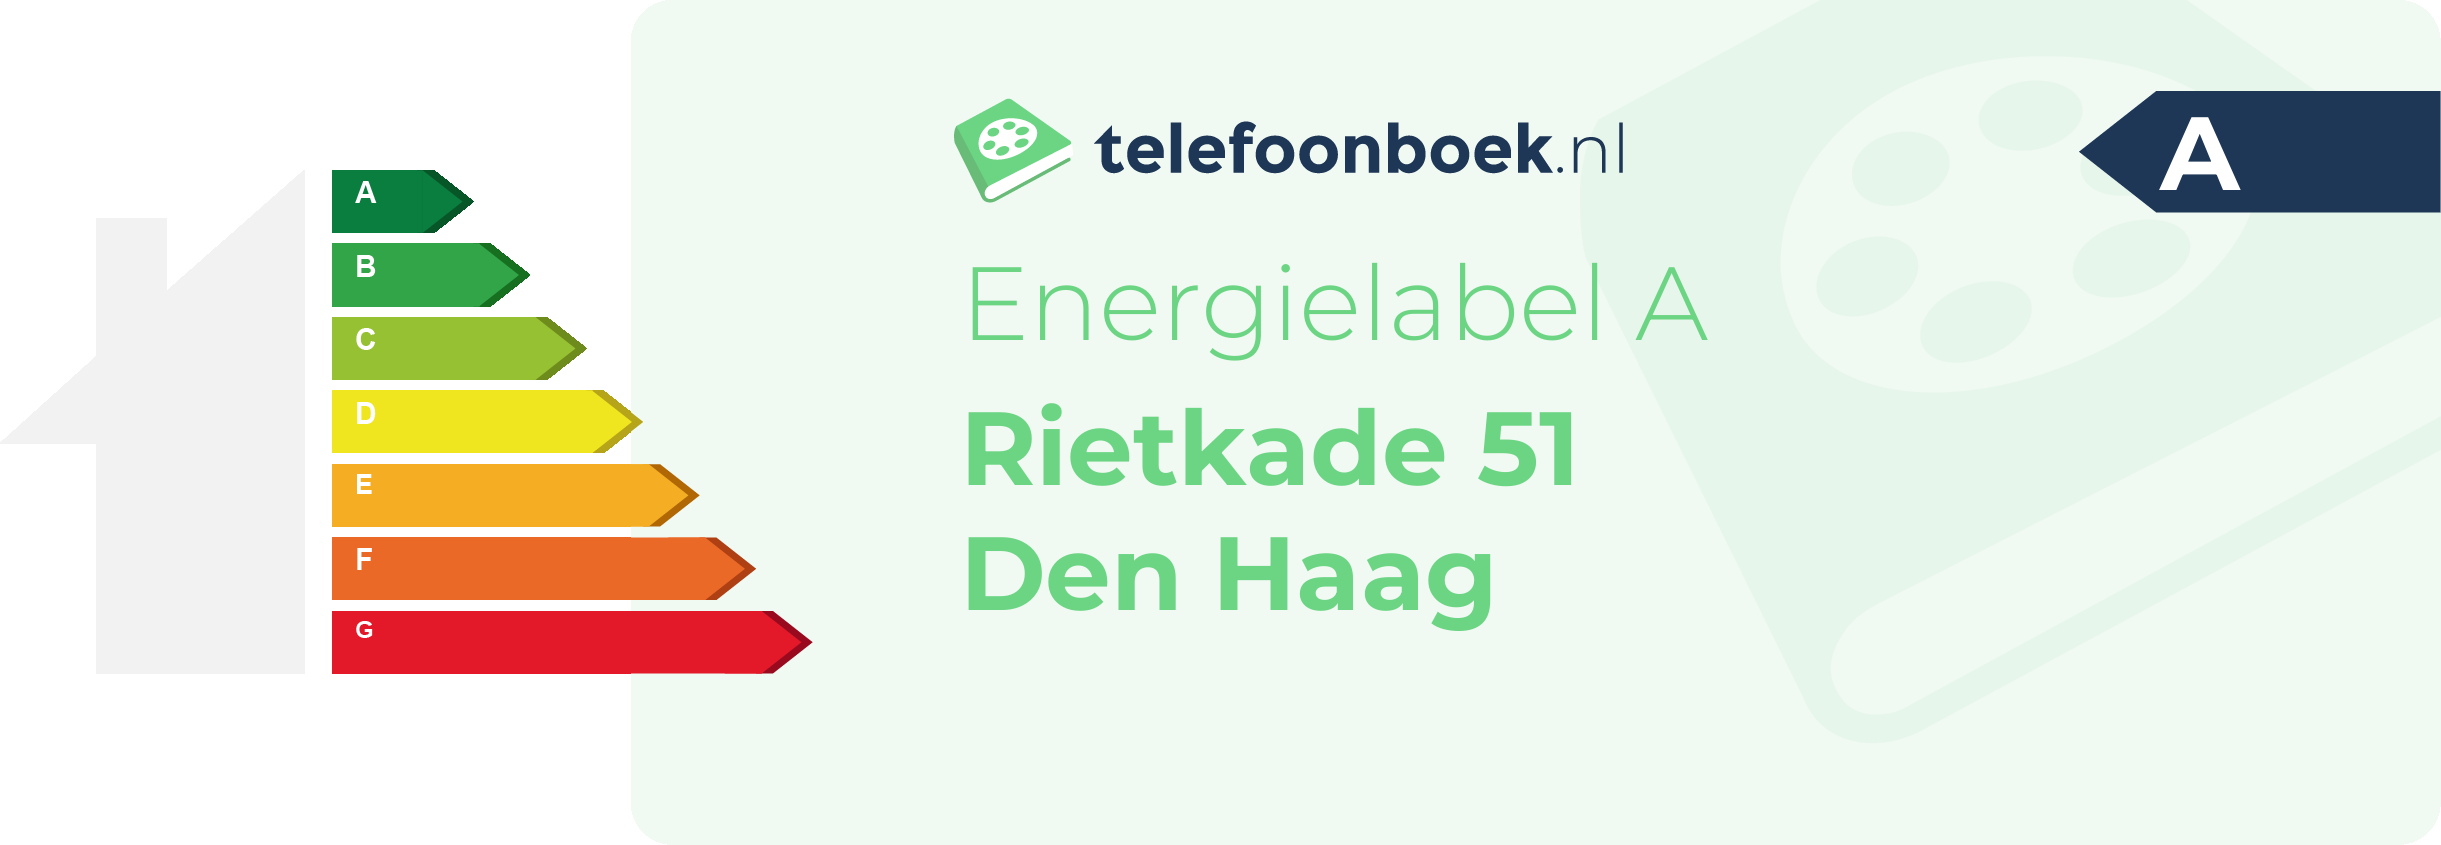 Energielabel Rietkade 51 Den Haag